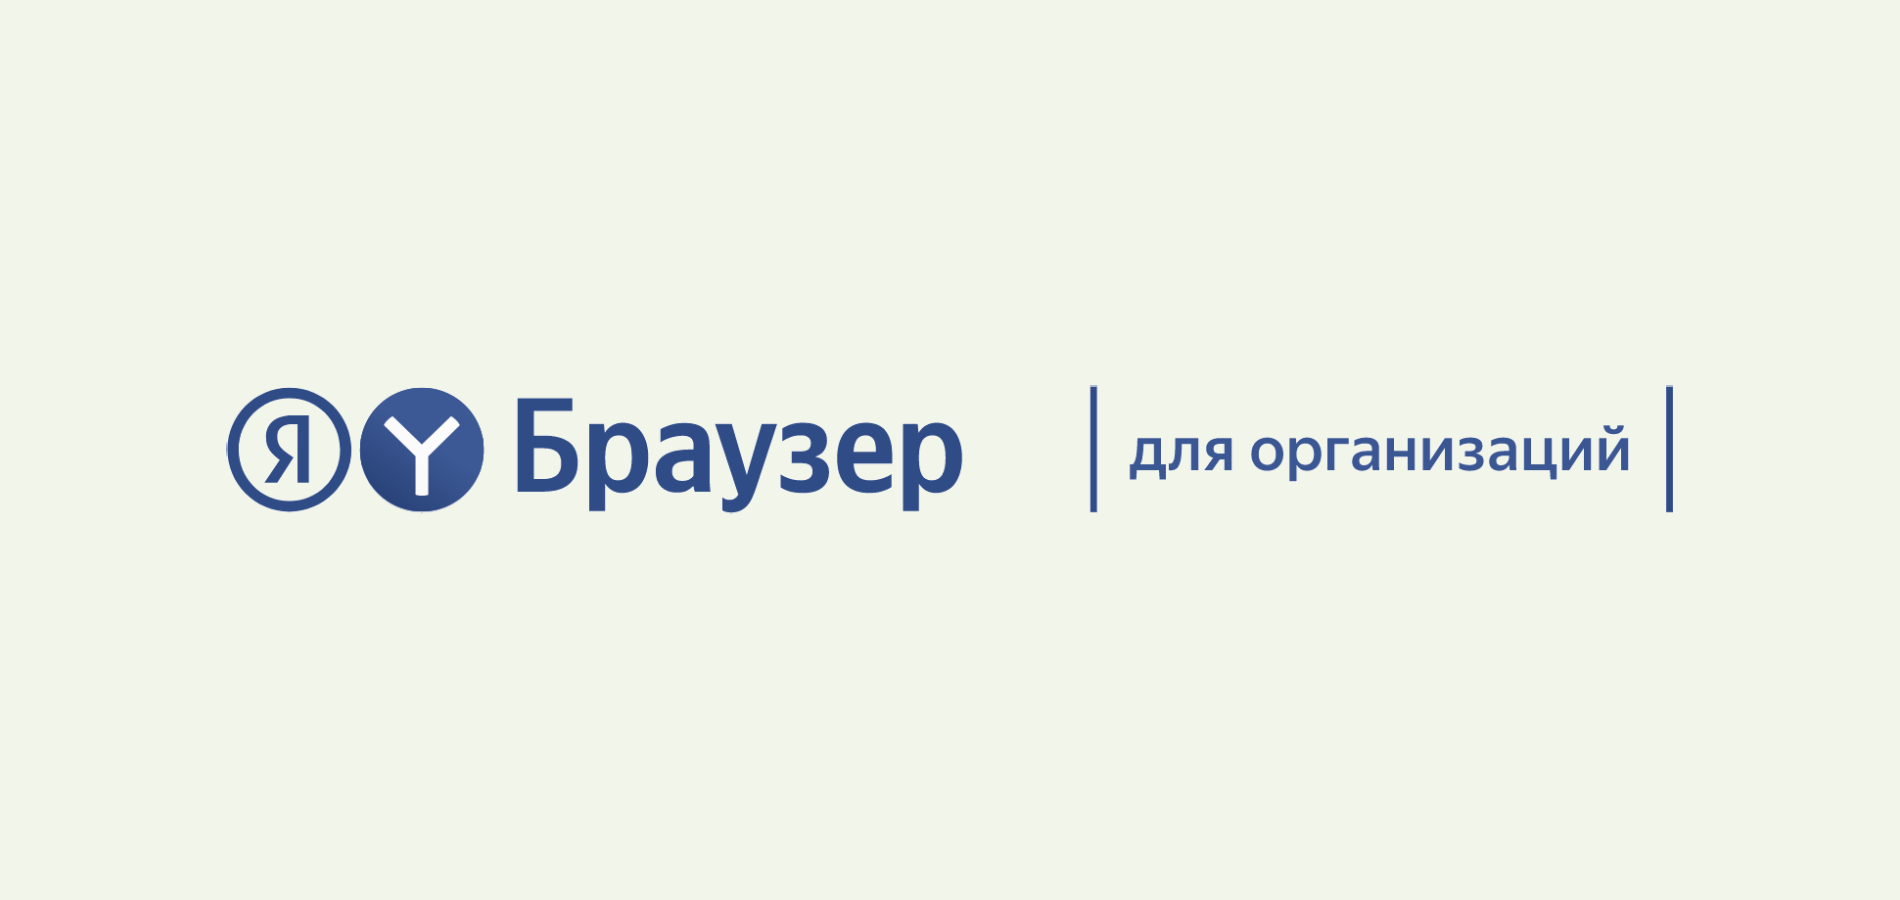 Яндекс выпустил новую версию Браузера для организаций